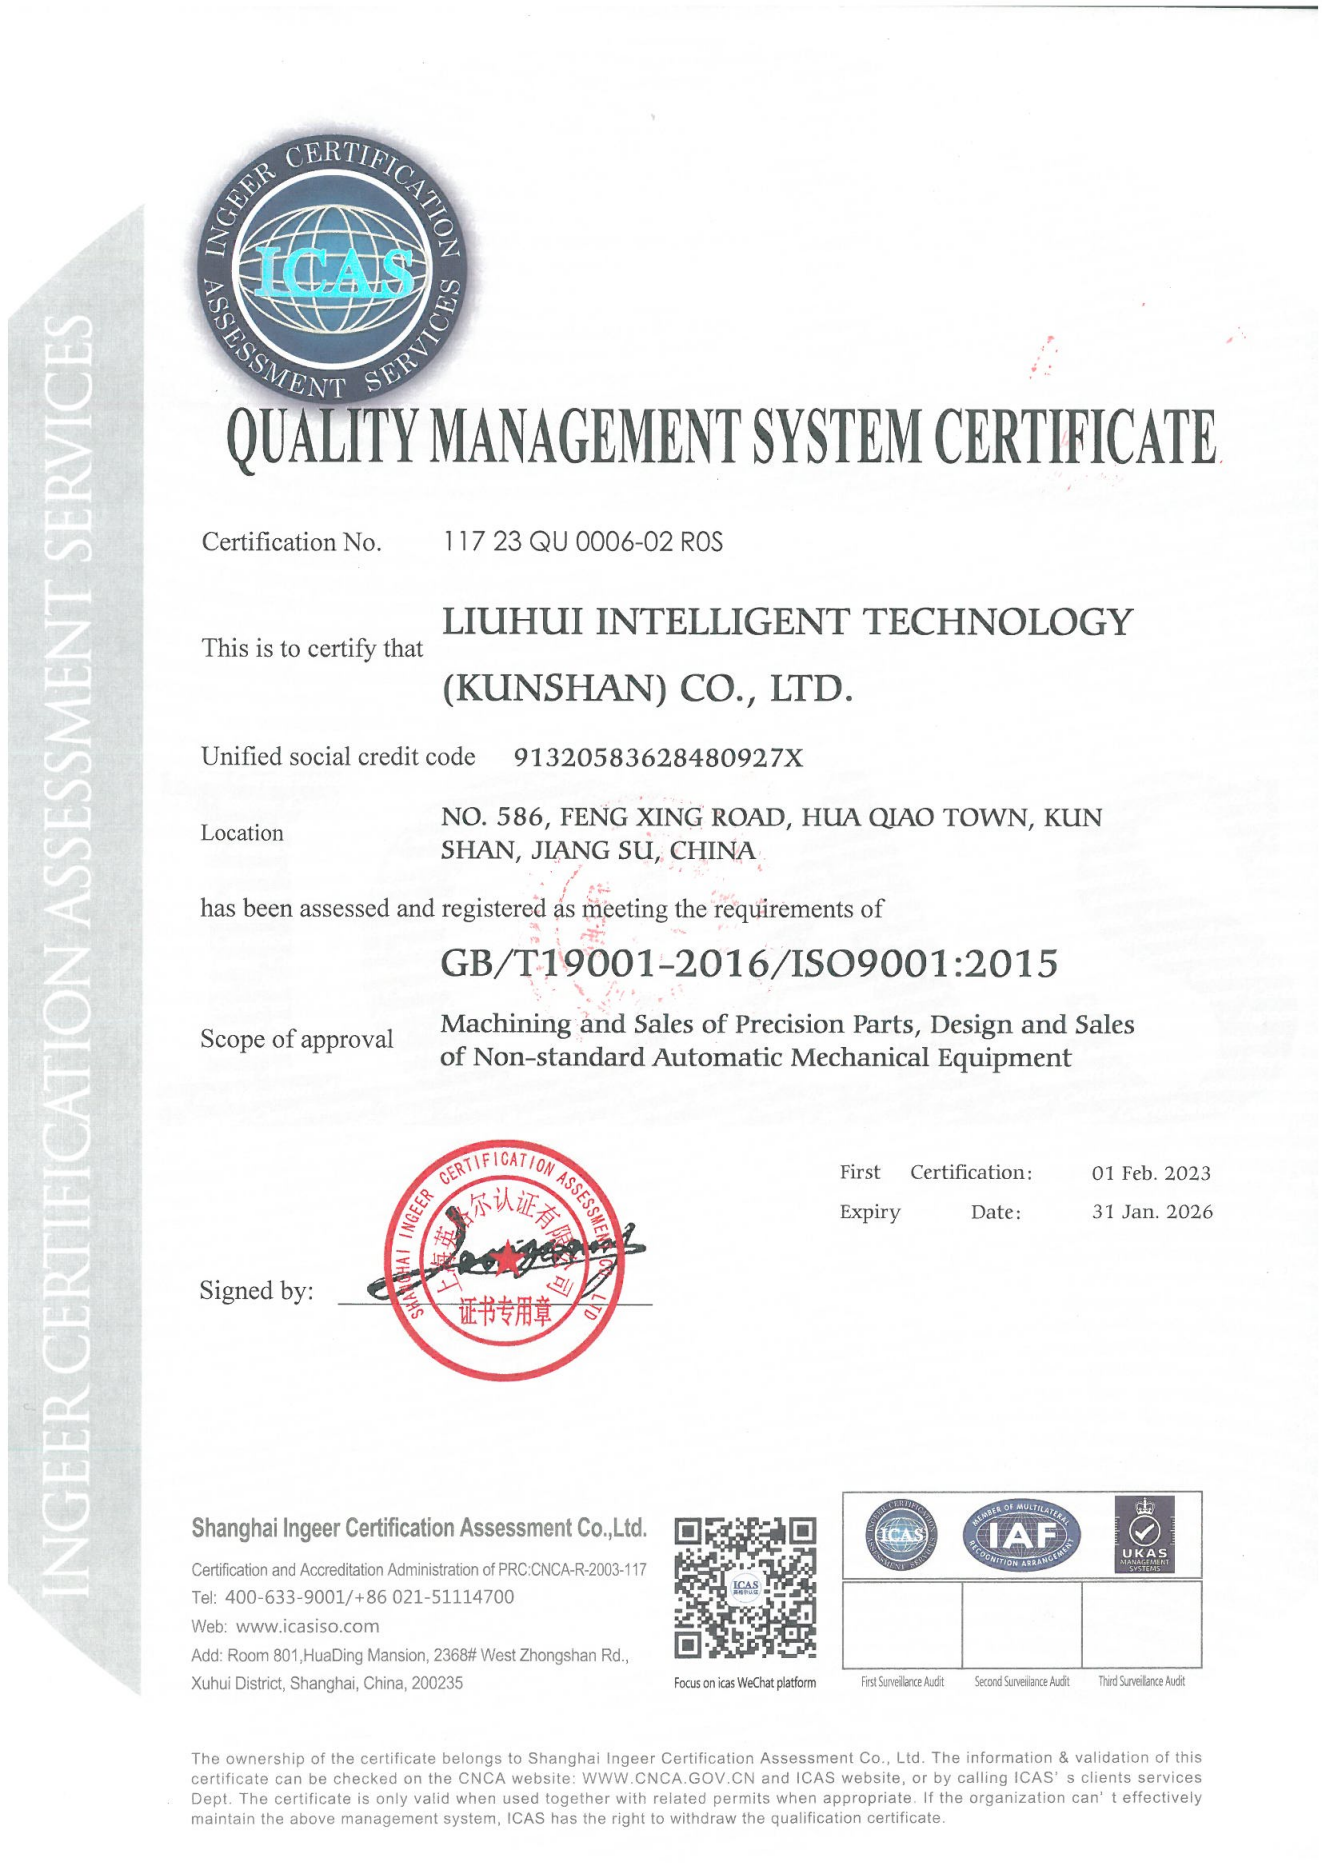 六晖智能 ISO9001中英文证书20230201~20260131_01.png